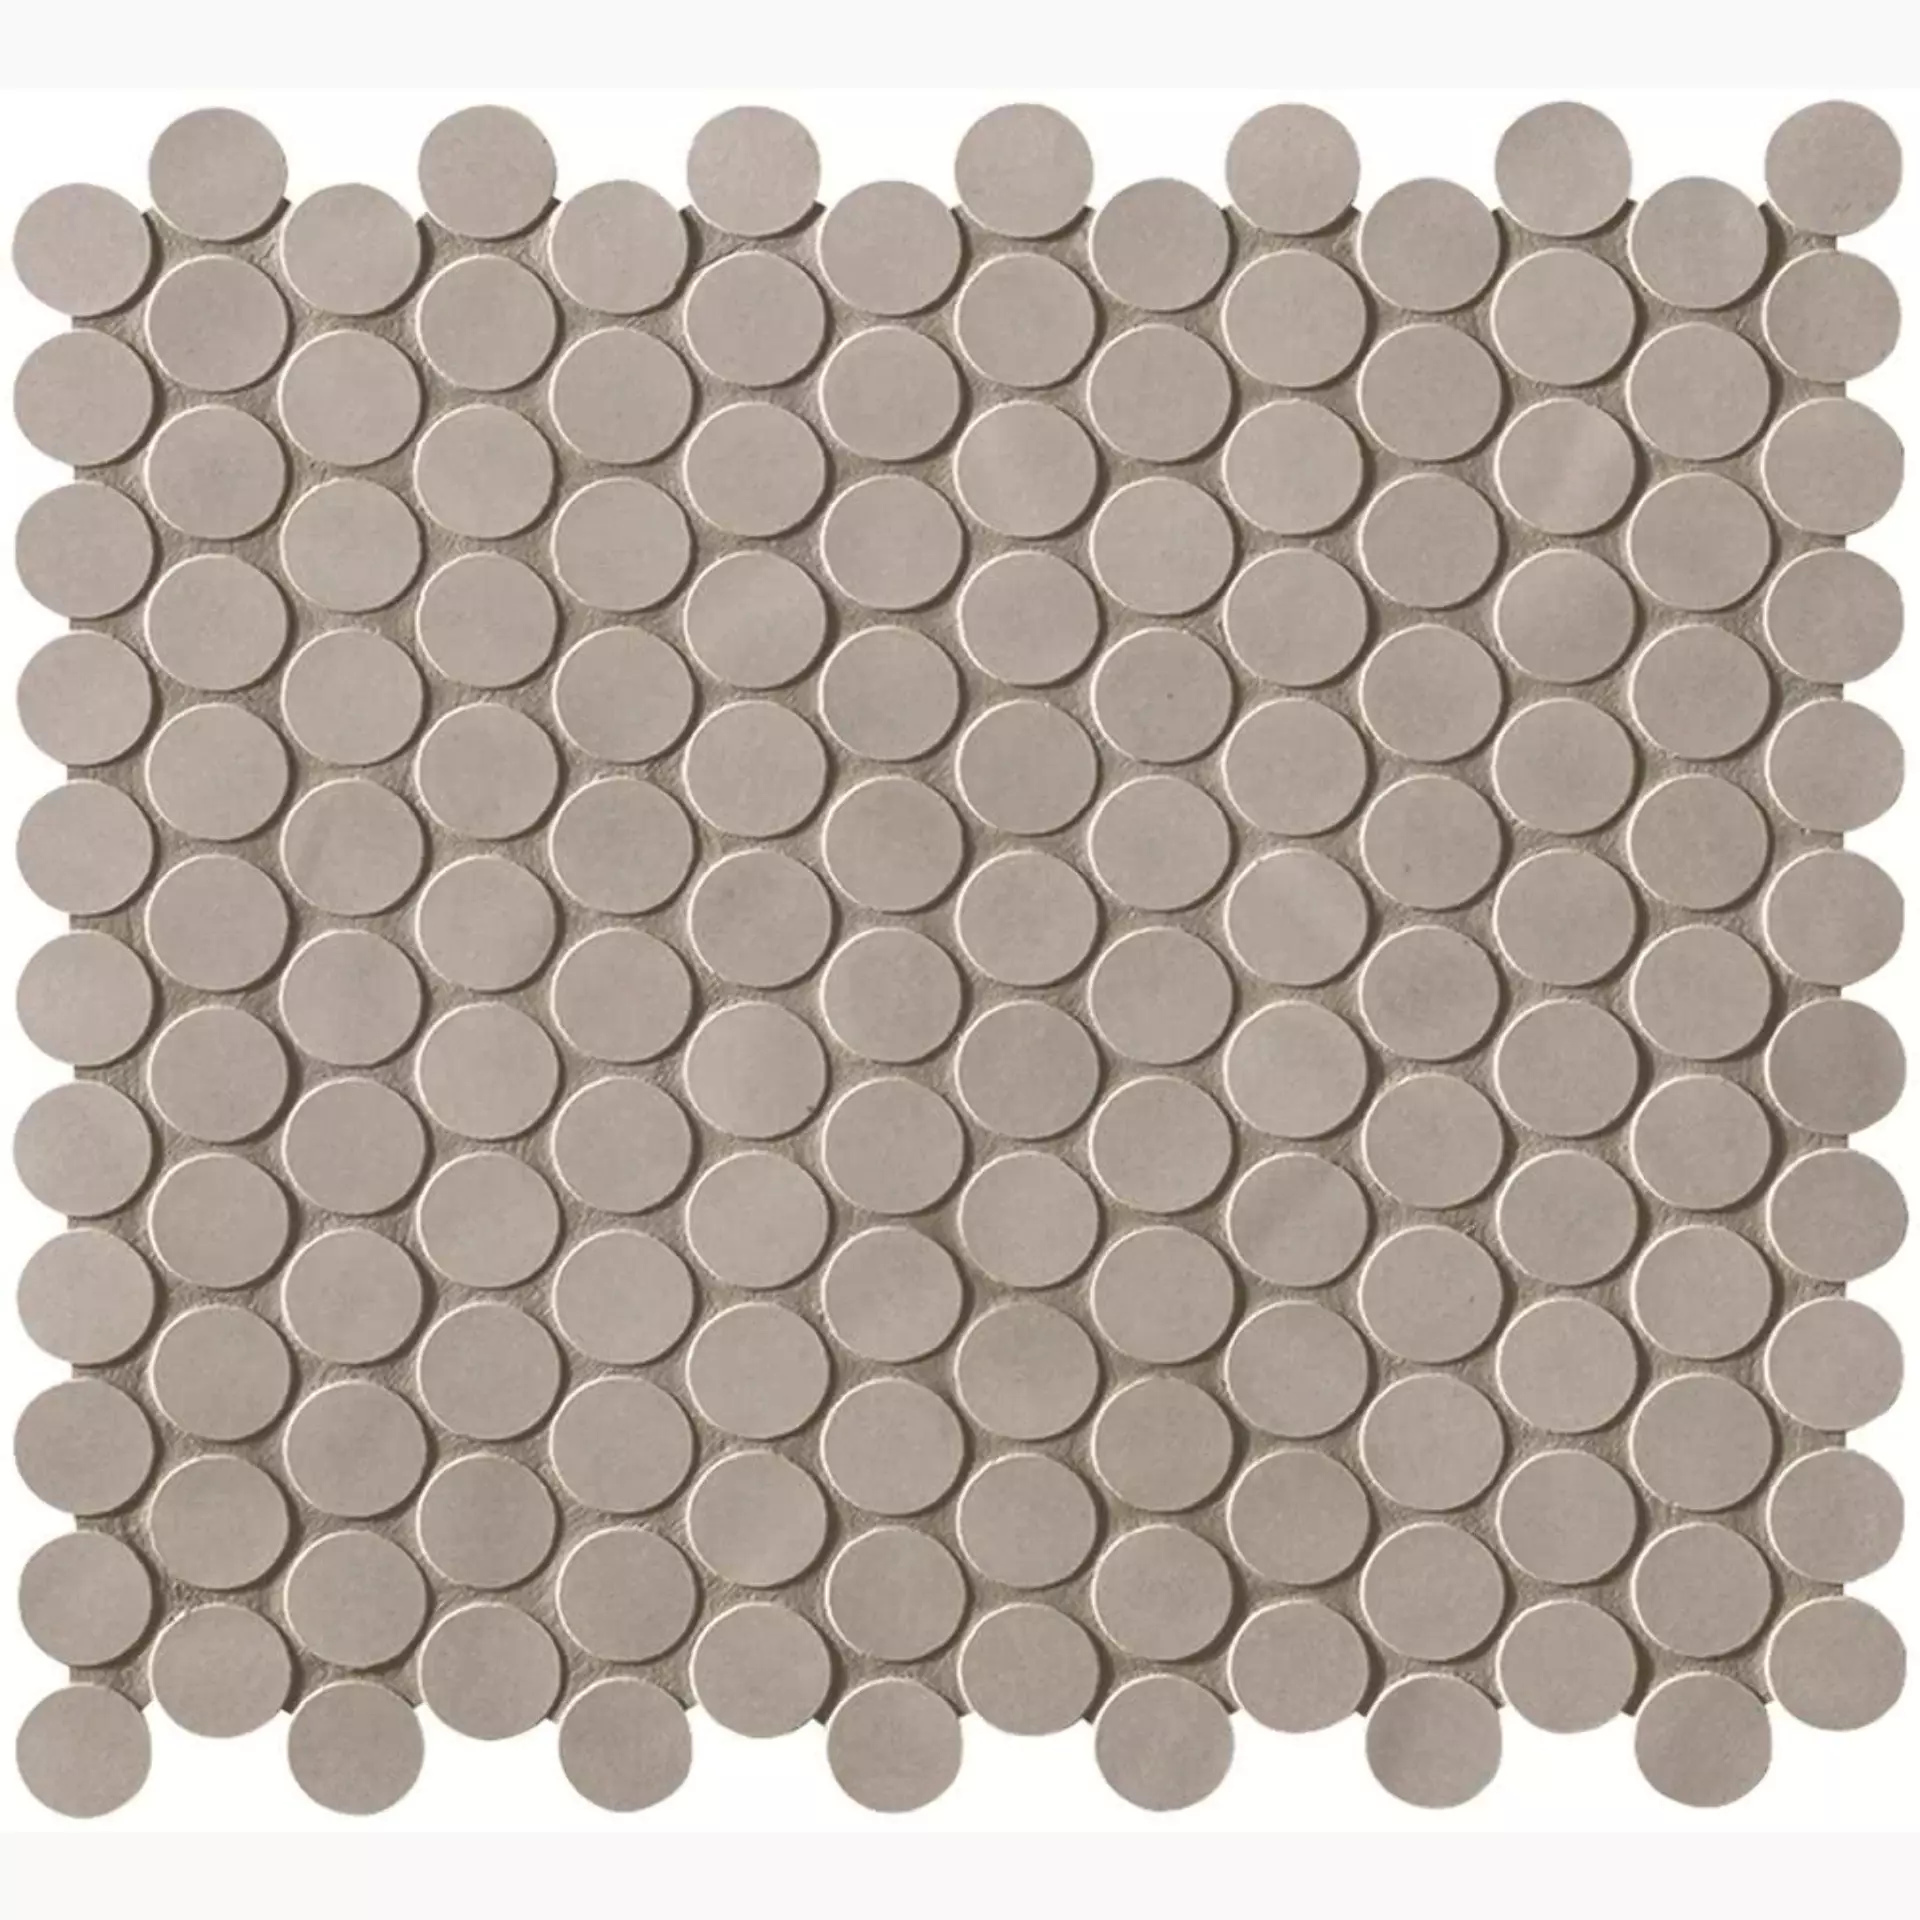 FAP Boston Cemento Matt Cemento fK5V matt 29,5x35cm Mosaik Round